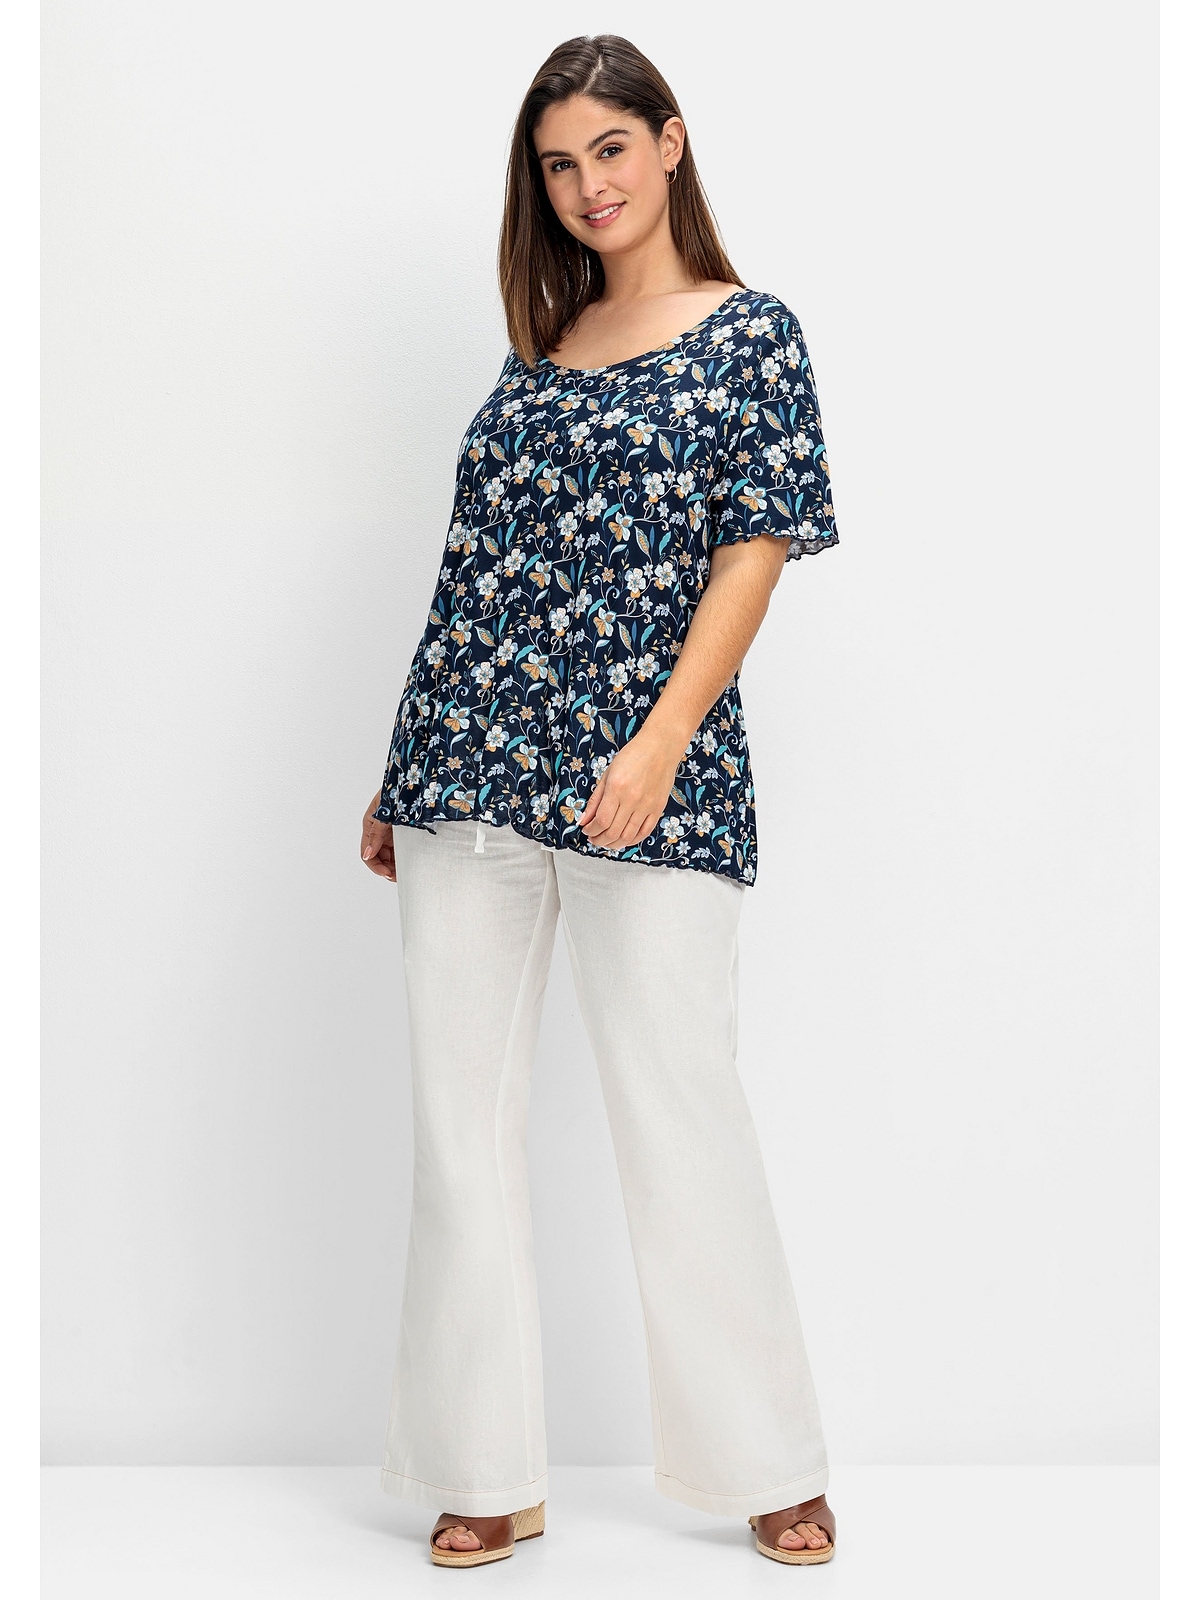 Sheego T-Shirt Große im Blumendruck und mit Rücken Cut-out Größen